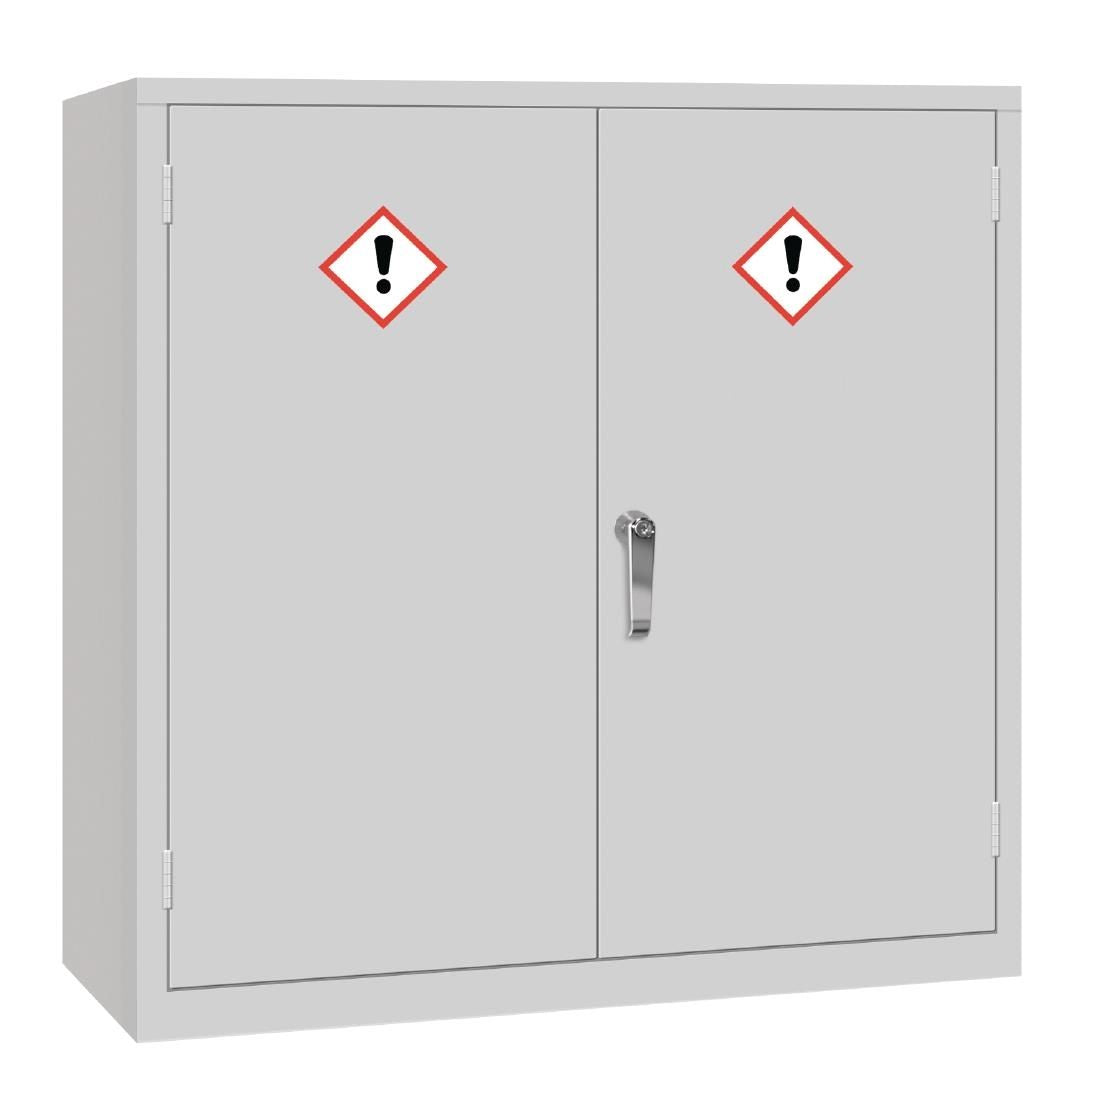 COSHH Cabinet Double Door Grey JD Catering Equipment Solutions Ltd